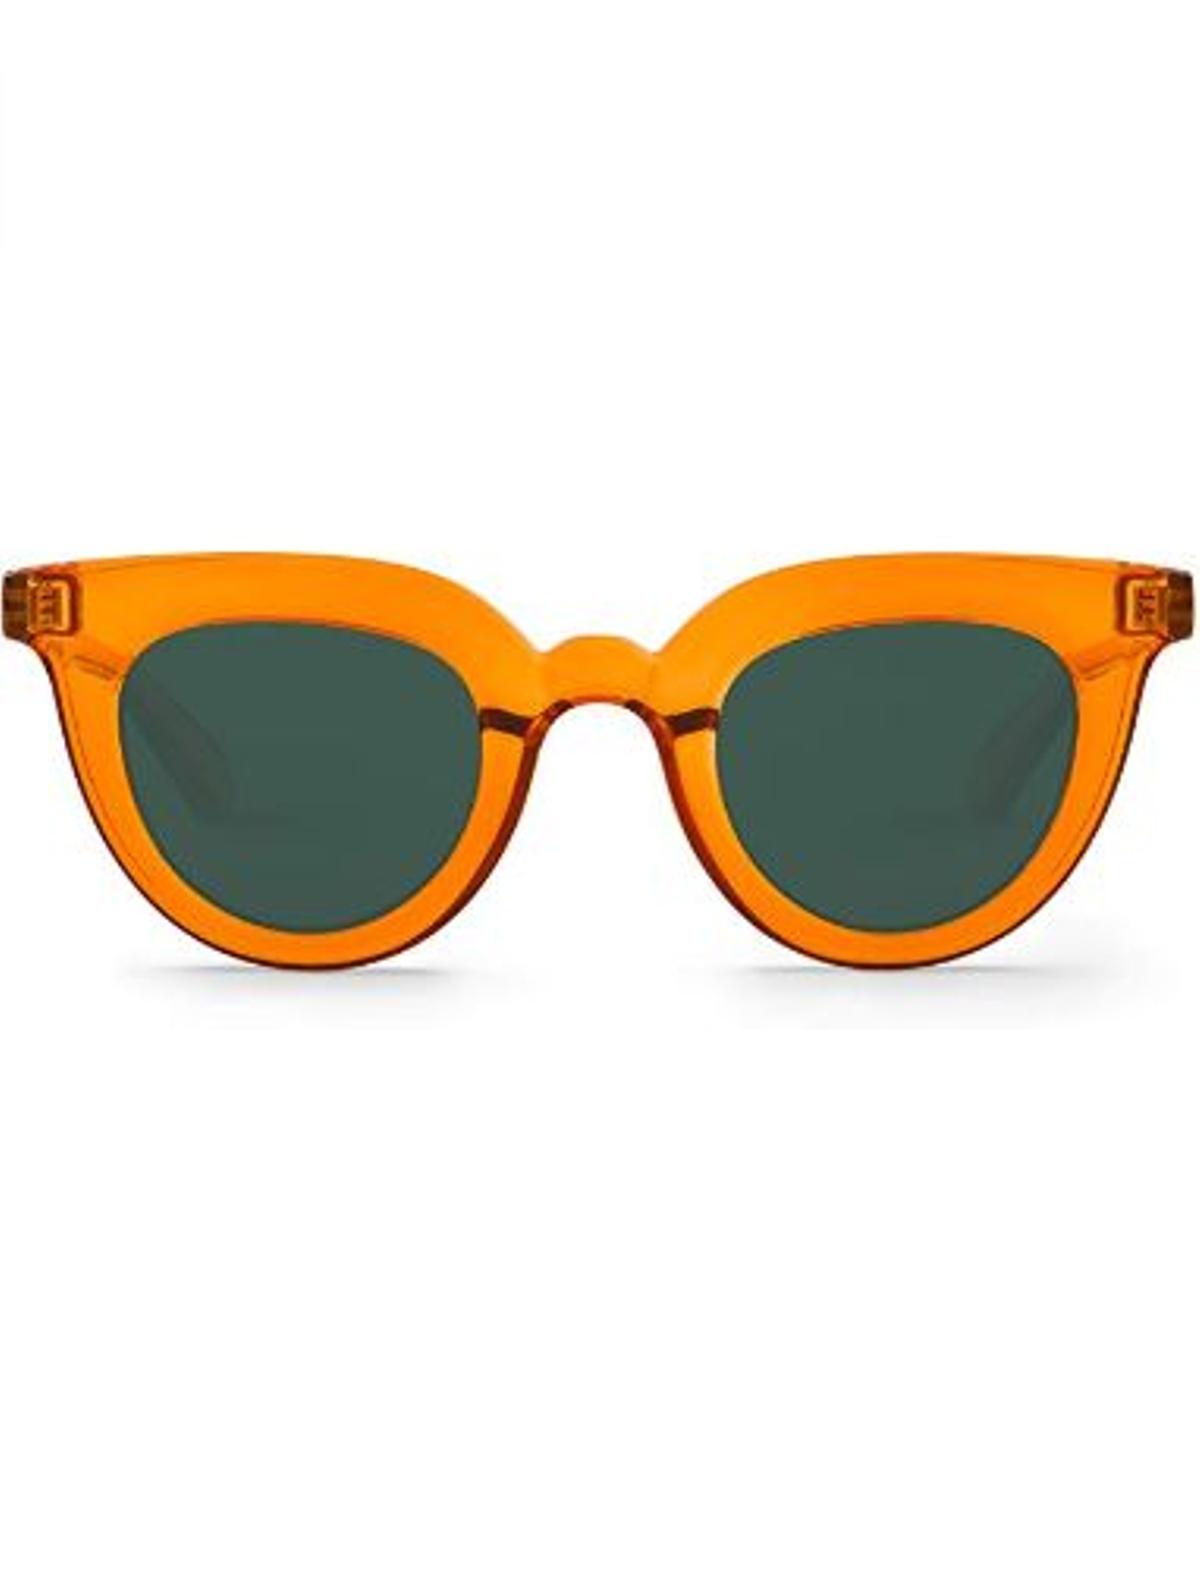 Gafas naranjas de sol Mr. Boho (Precio: 52,19 euros)